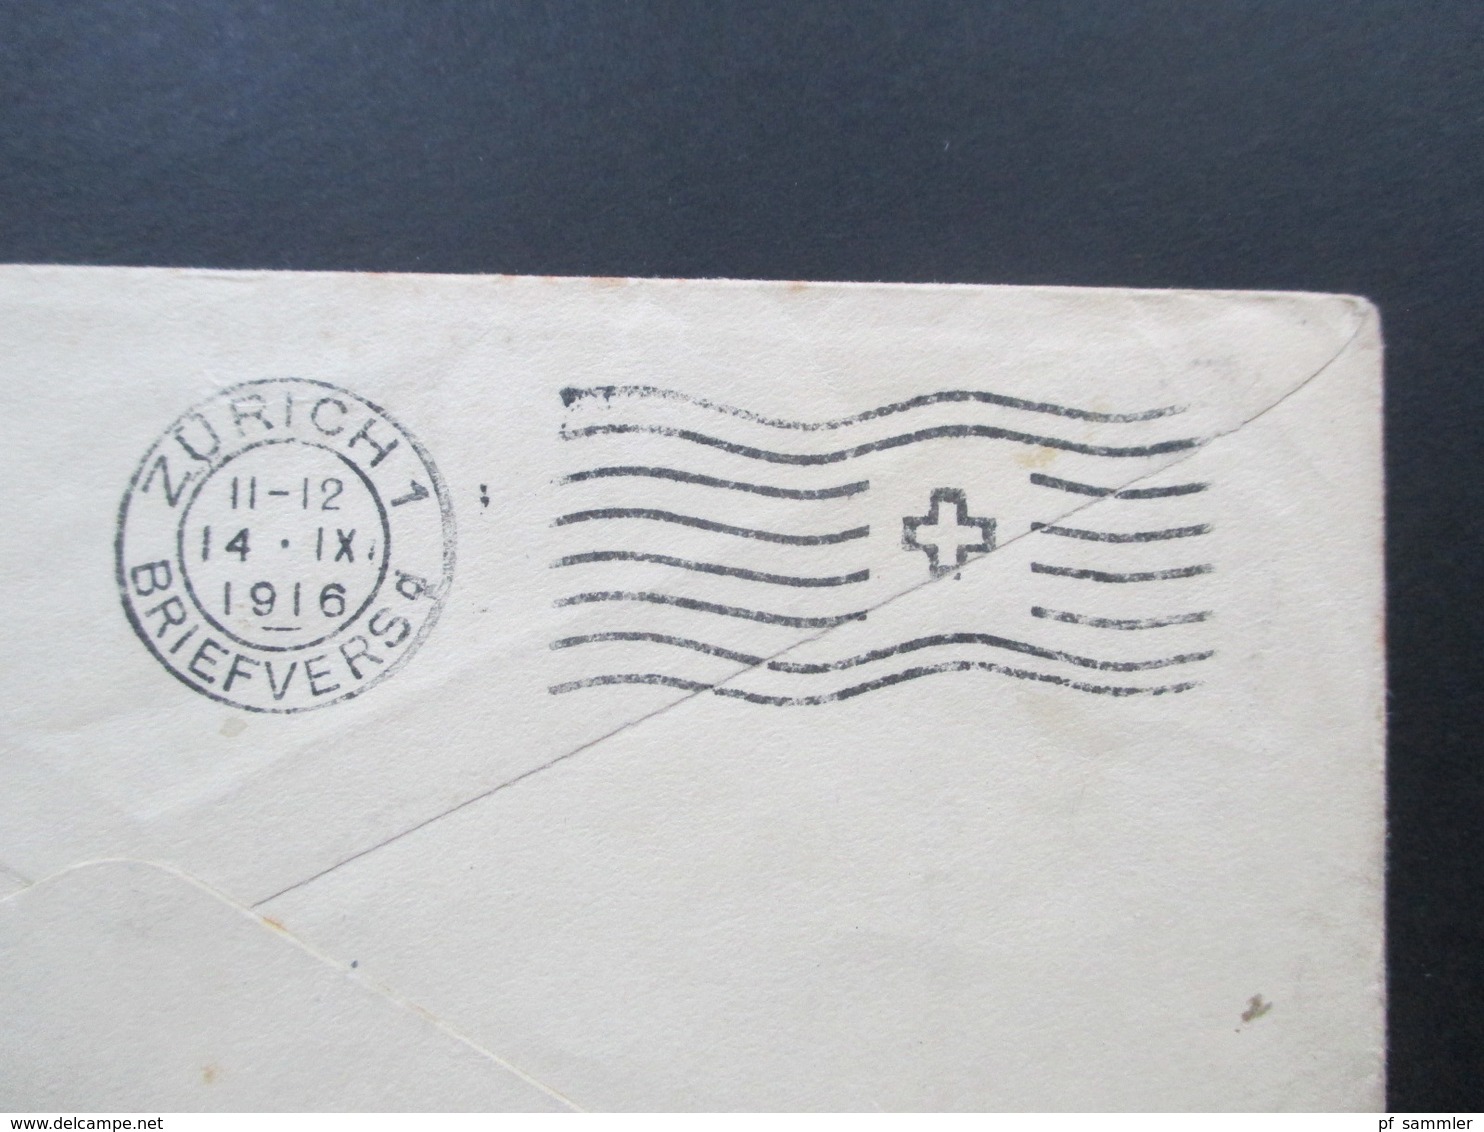 USA 1920 Ganzsachenumschlag Mit 2 Zusatzfrankaturen! Del Rio - Zürich. Controle Postal Militaire. Zensurbeleg - Covers & Documents